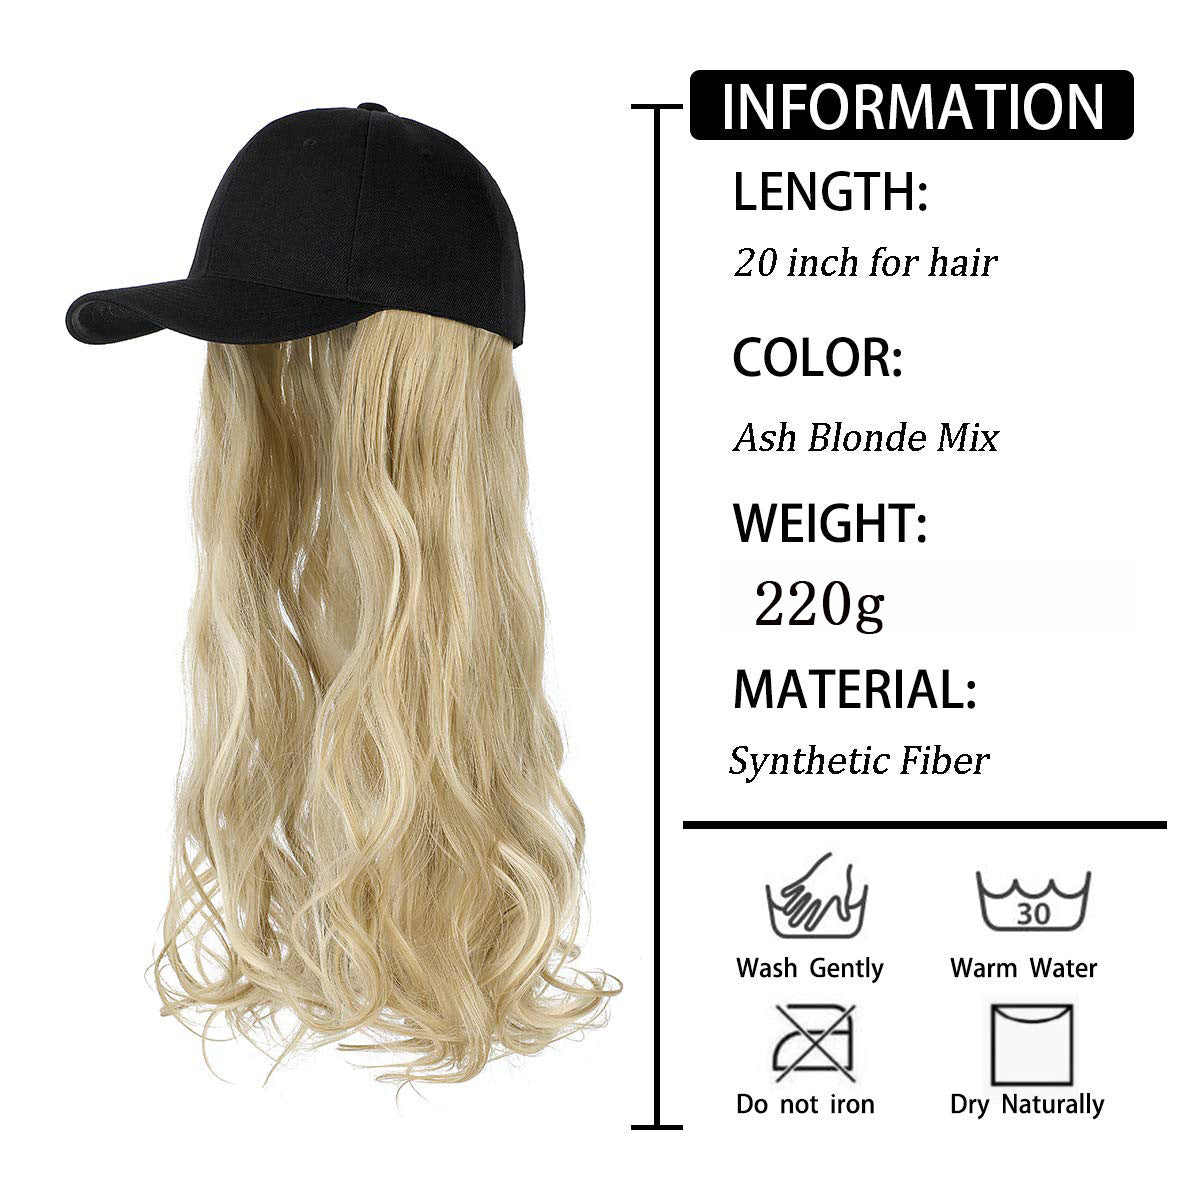 Длинный волнистый парик с вьющимися волосами, парик из натуральной интегрированной бейсбольной кепки черного, светлого и коричневого цвета